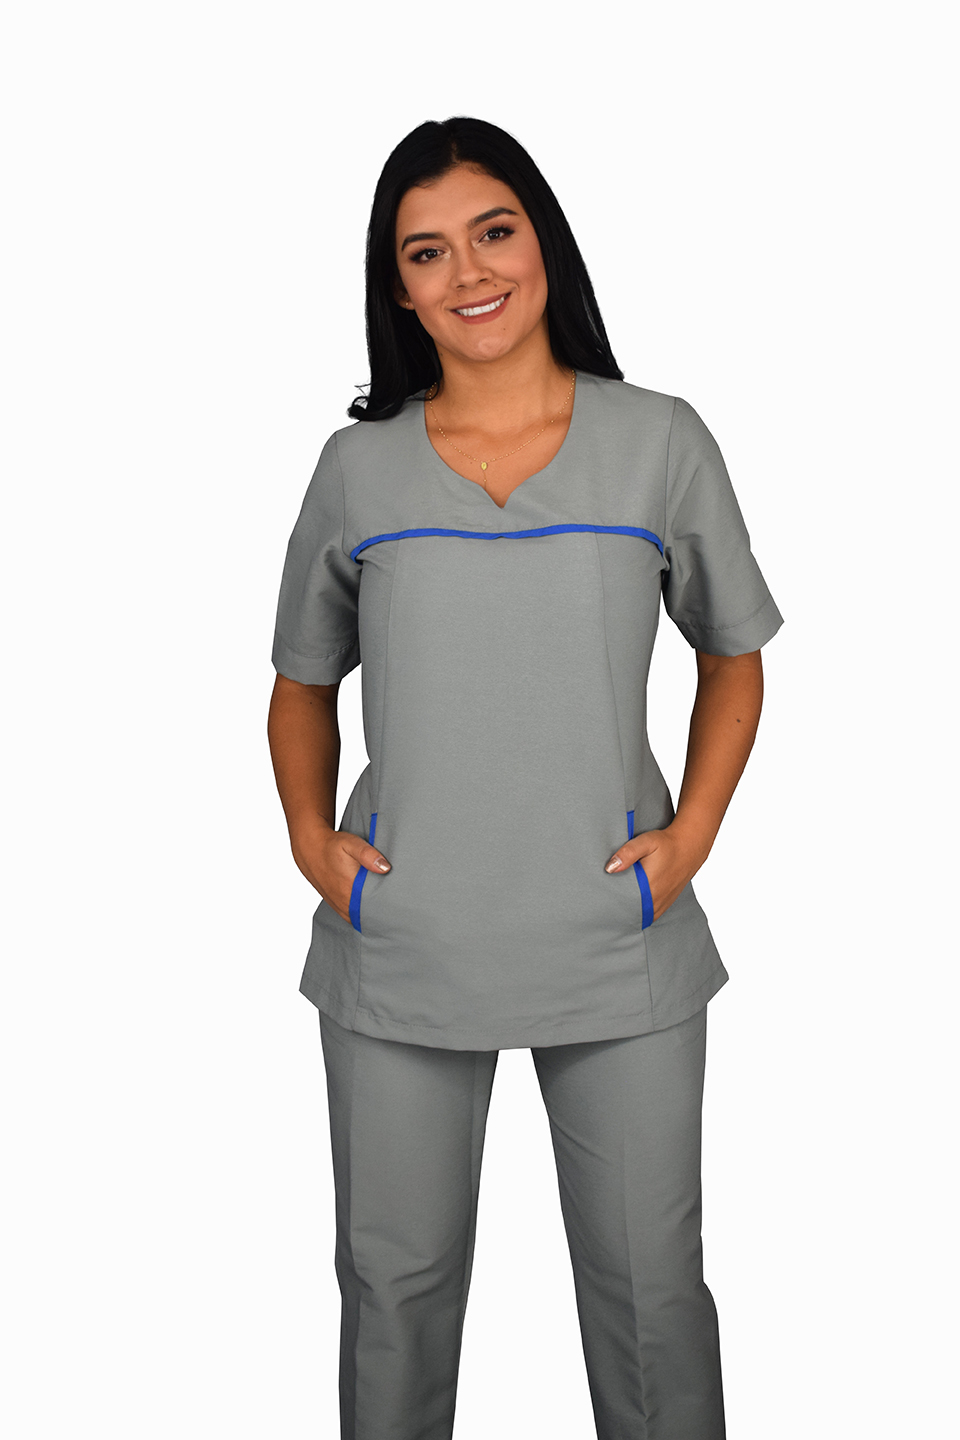 uniforme empresarial gris con detalles azules (0574)  Celmy diseño y  fabricación de uniformes empresariales y uniformes ejecutivos